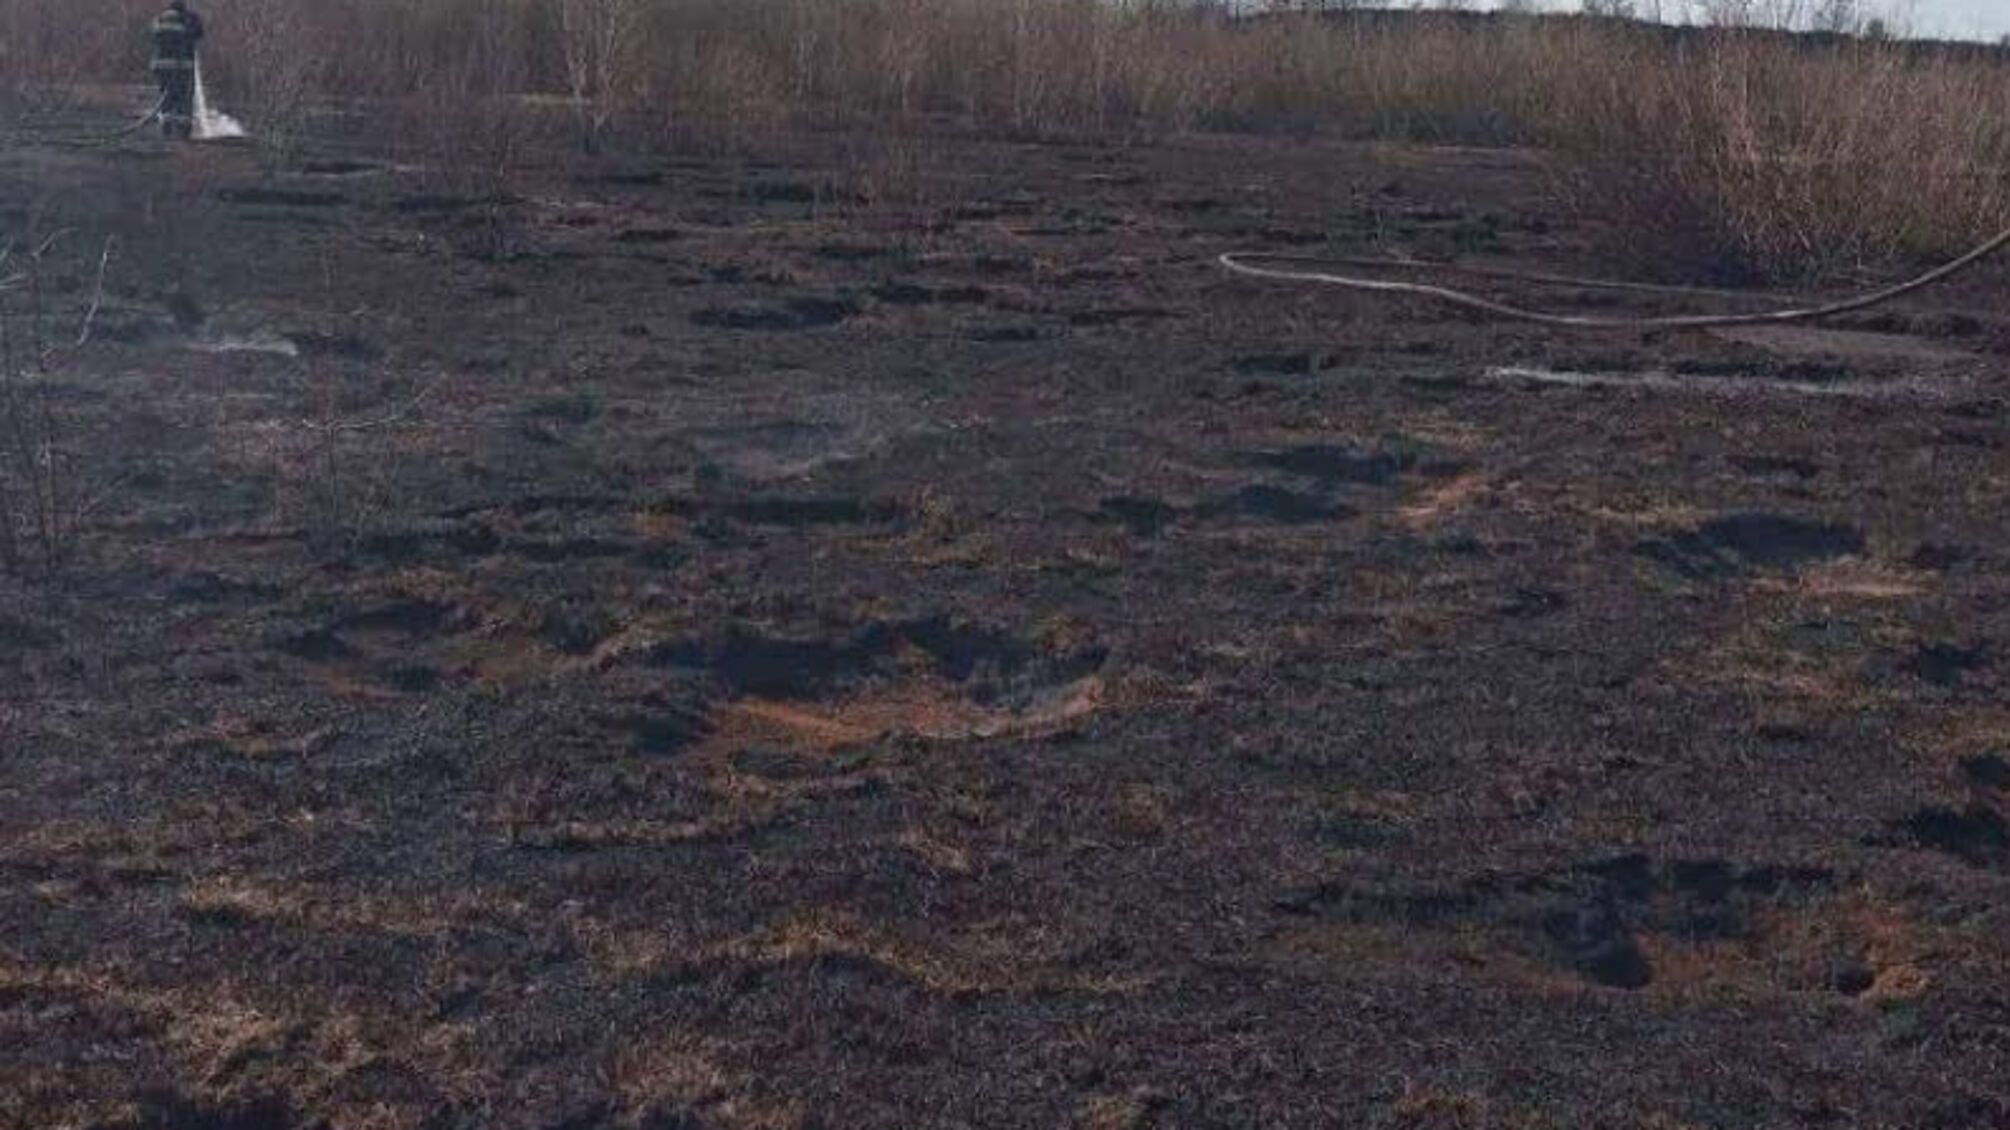 Волинська область: триває гасіння пожежі на торф’янику